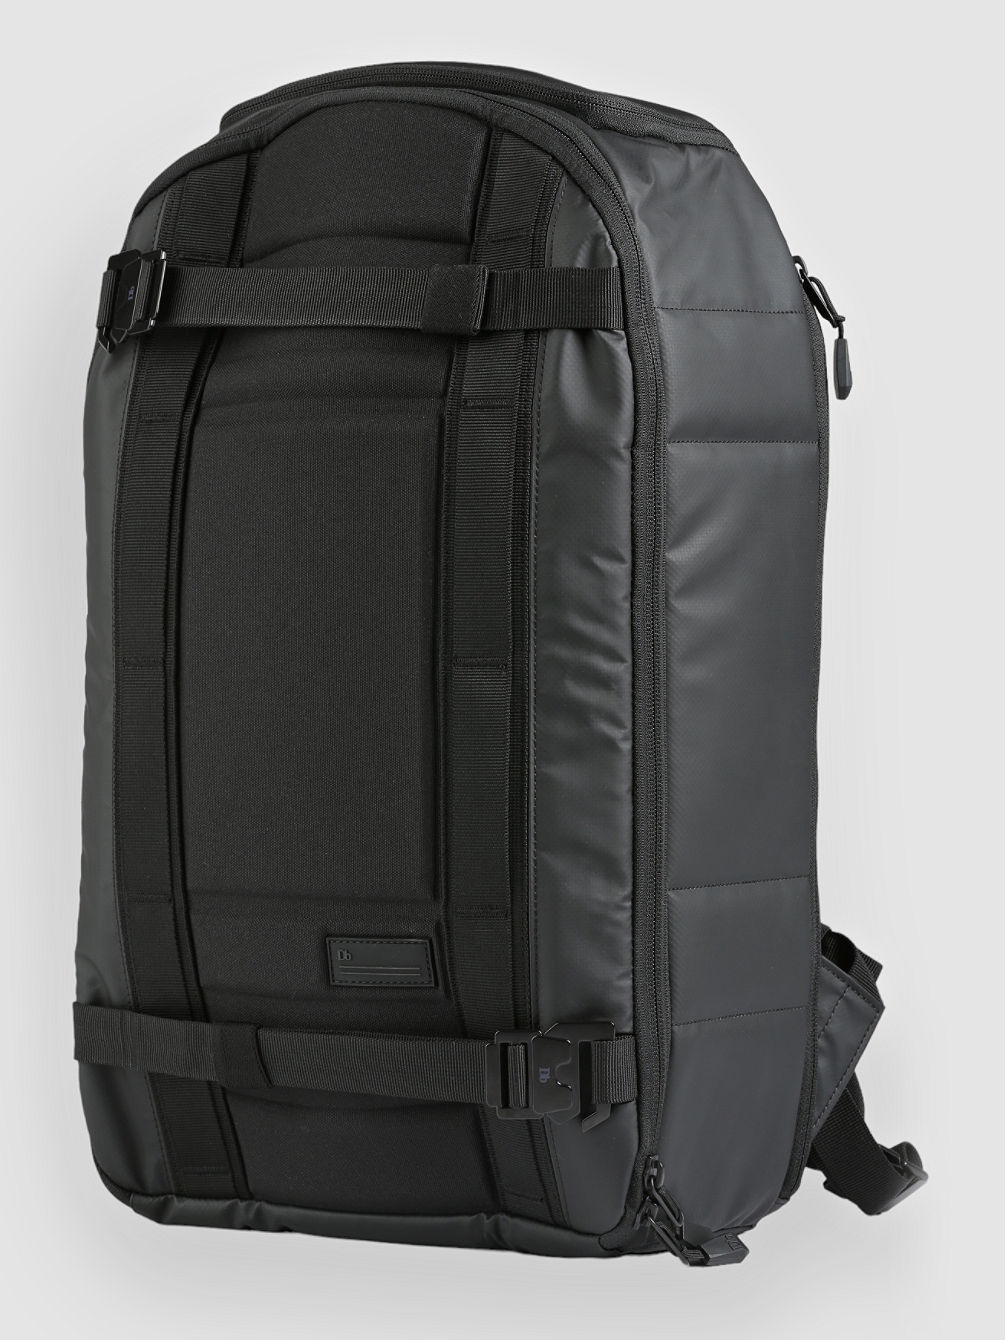 The Ramverk 21L Backpack